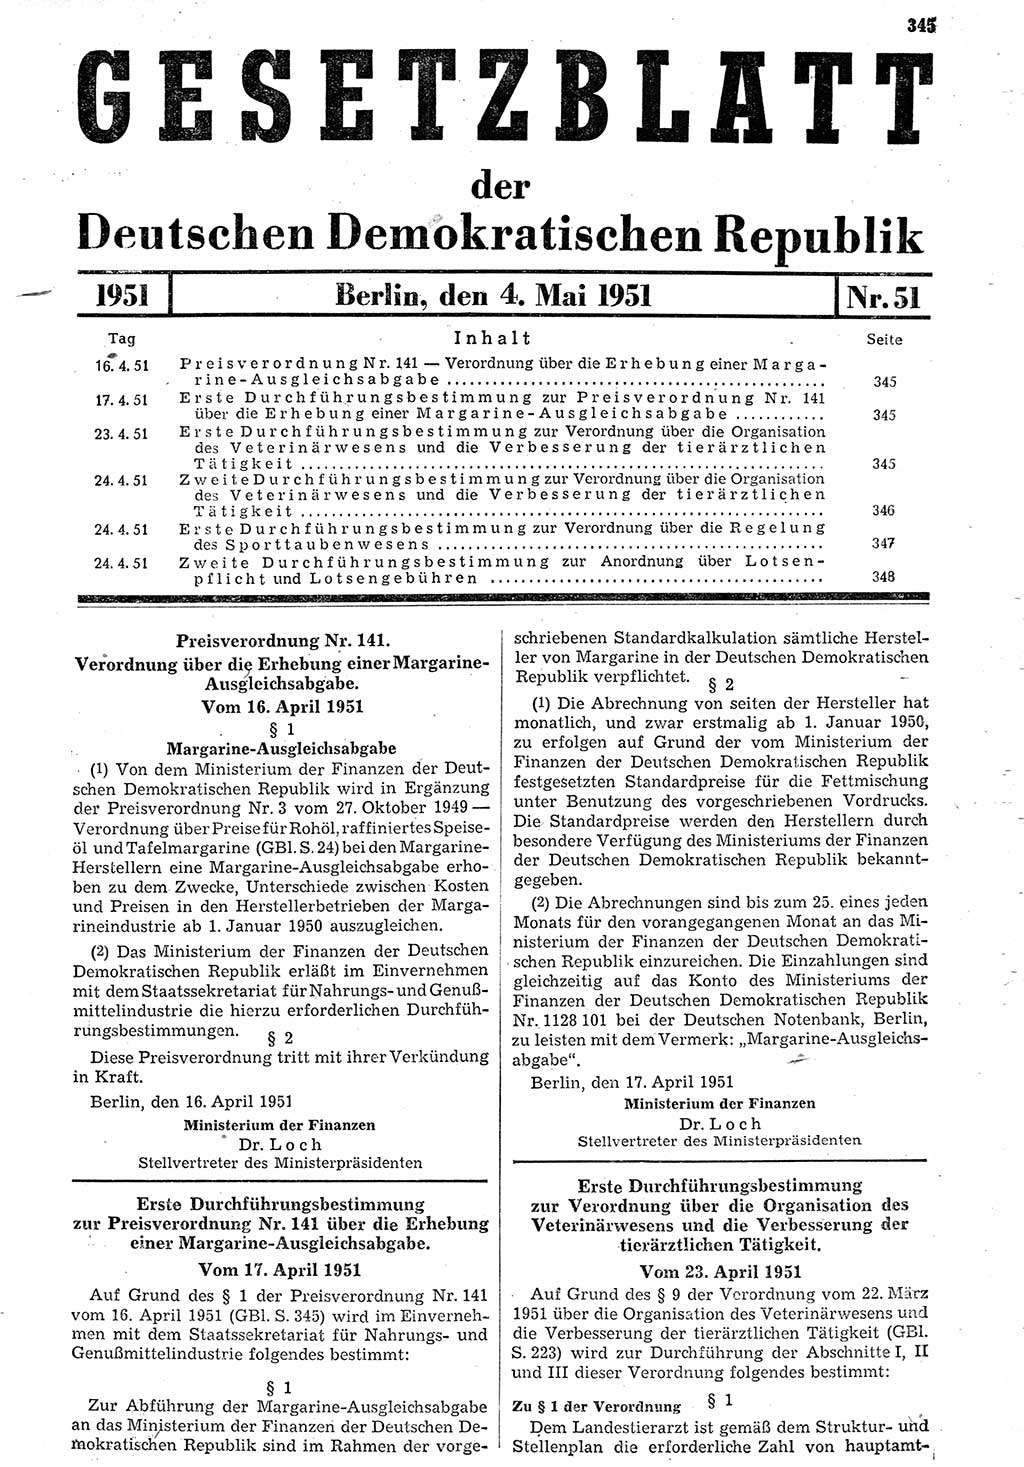 Gesetzblatt (GBl.) der Deutschen Demokratischen Republik (DDR) 1951, Seite 345 (GBl. DDR 1951, S. 345)